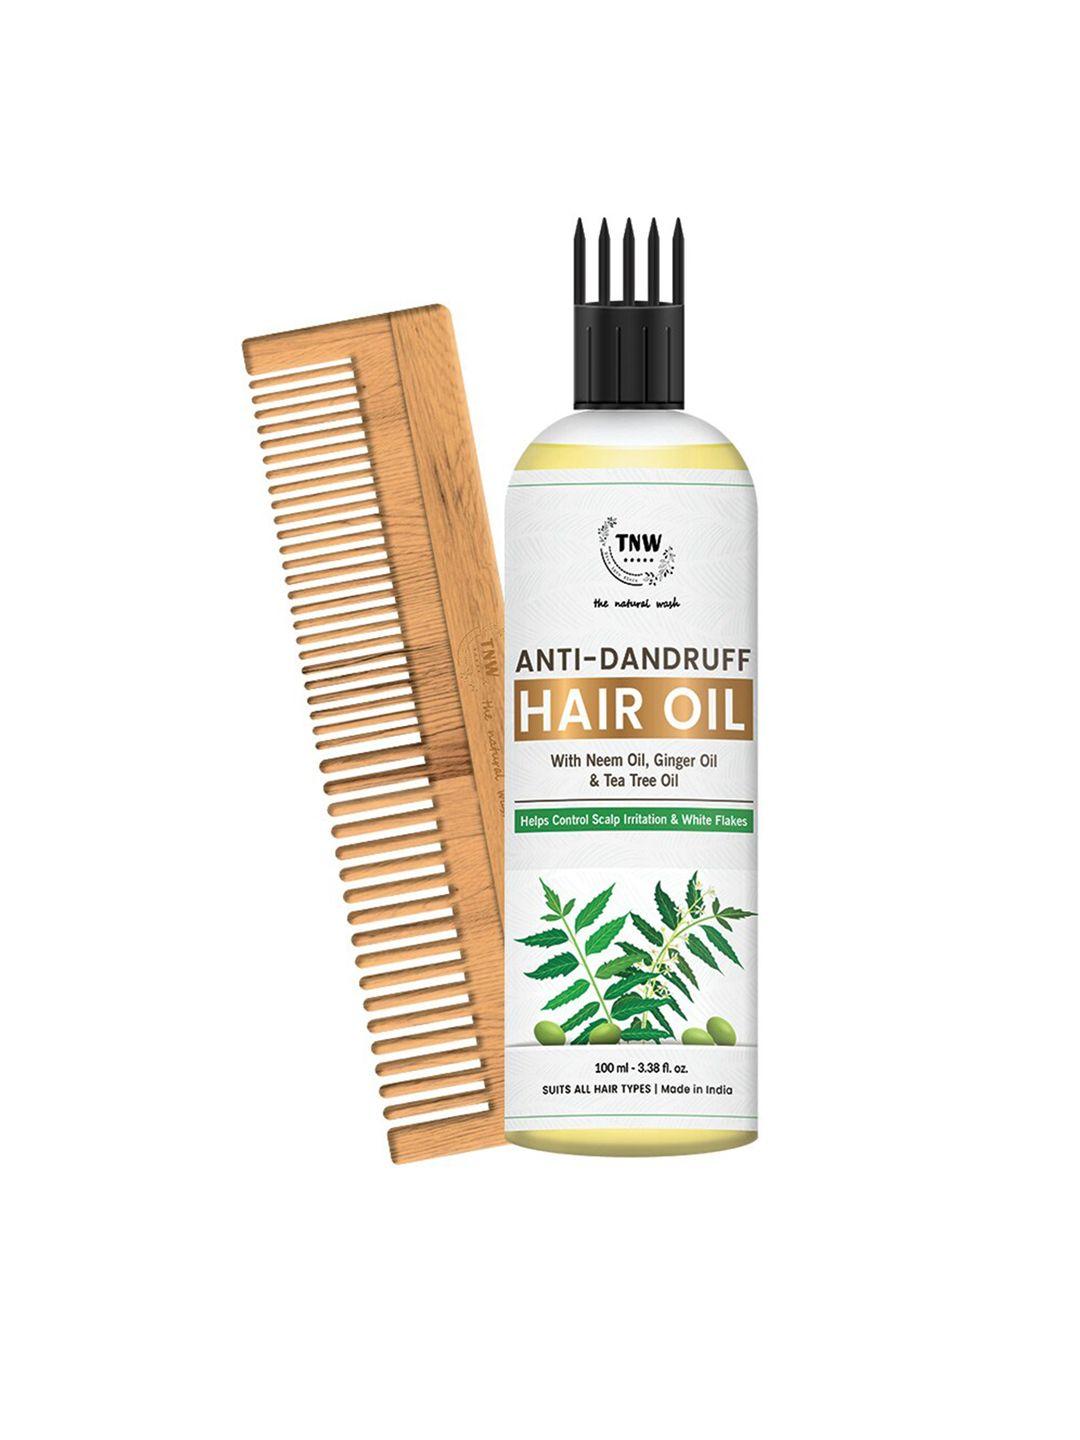 tnw set of 2 anti-dandruff hair oil-100ml & neem comb